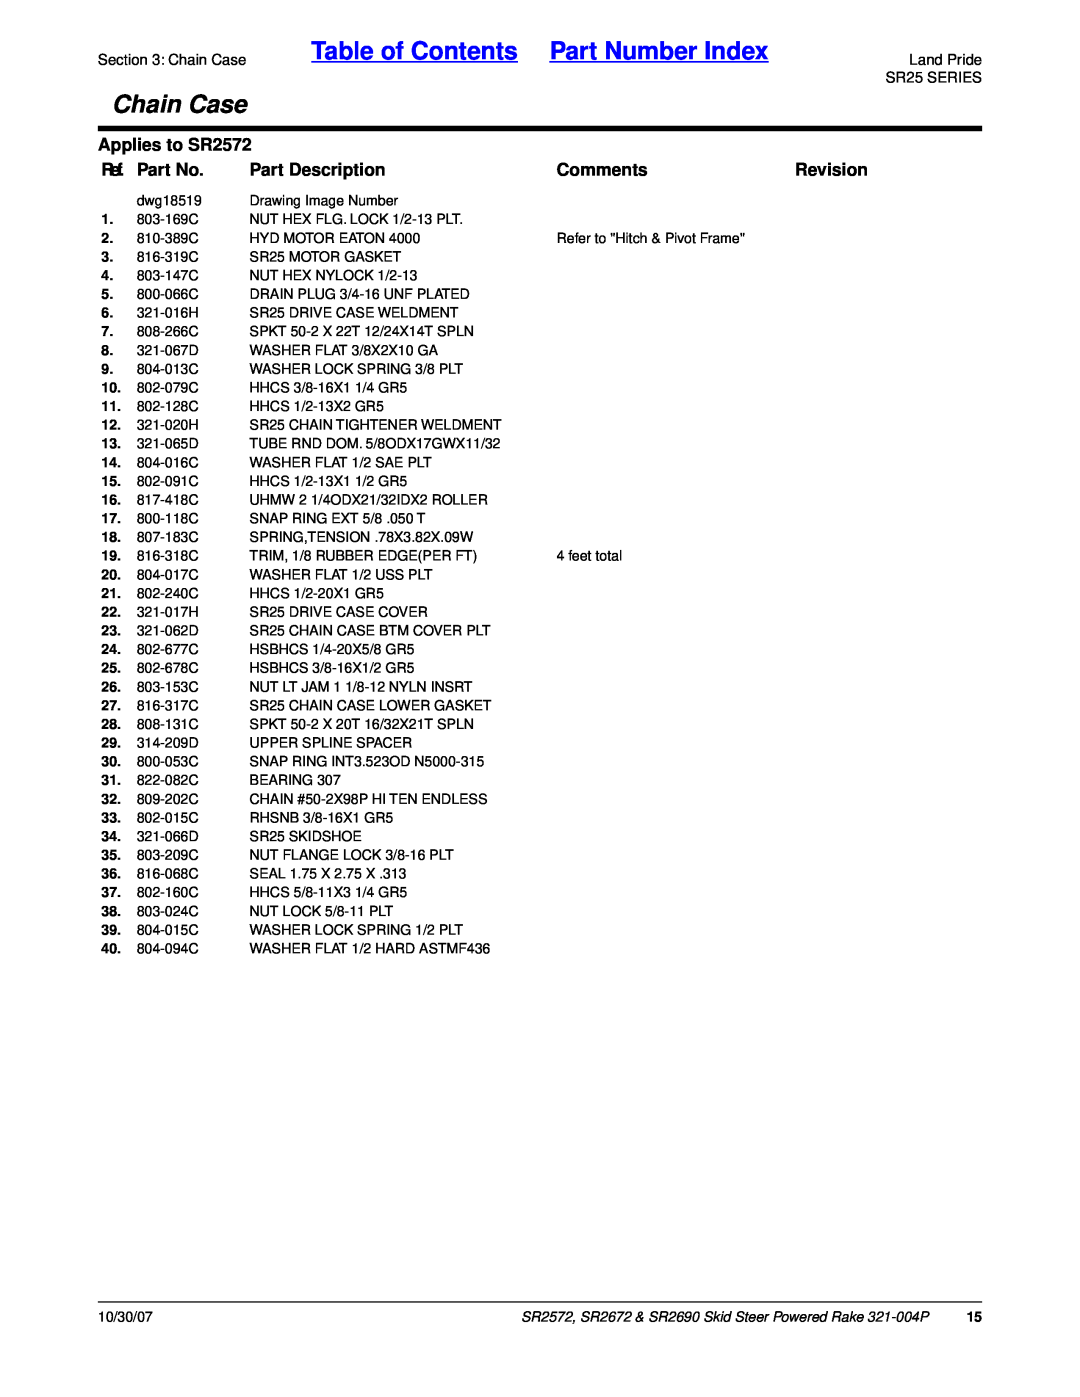 Land Pride SR2690 manual Table of Contents Part Number Index, Chain Case, Applies to SR2572, Ref. Part No, Part Description 